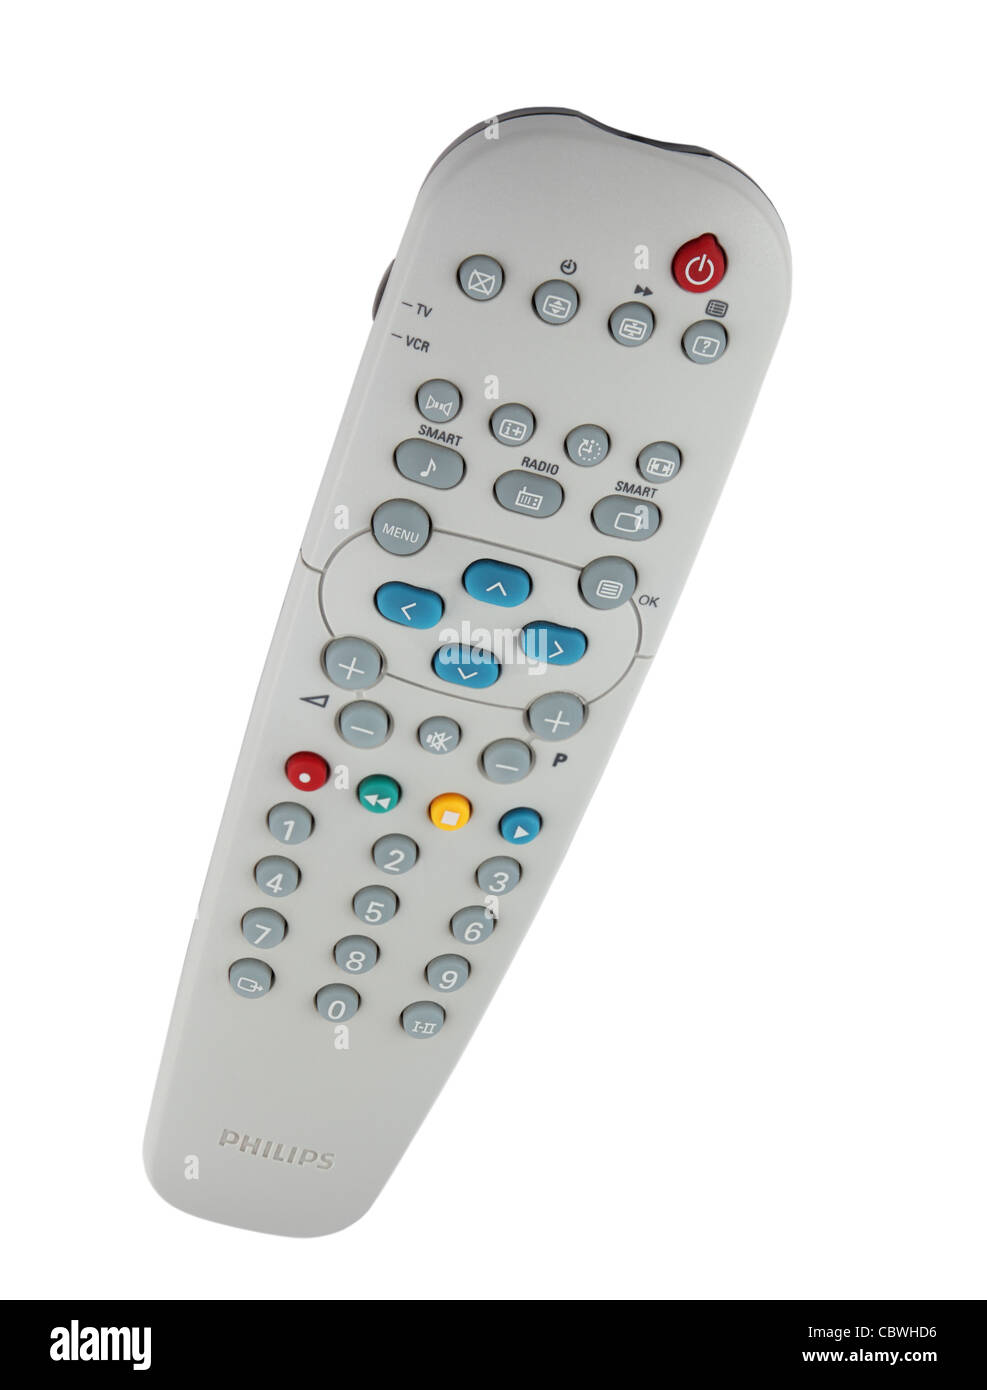 Un dispositif de télécommande TV Philips isolé sur fond blanc Banque D'Images